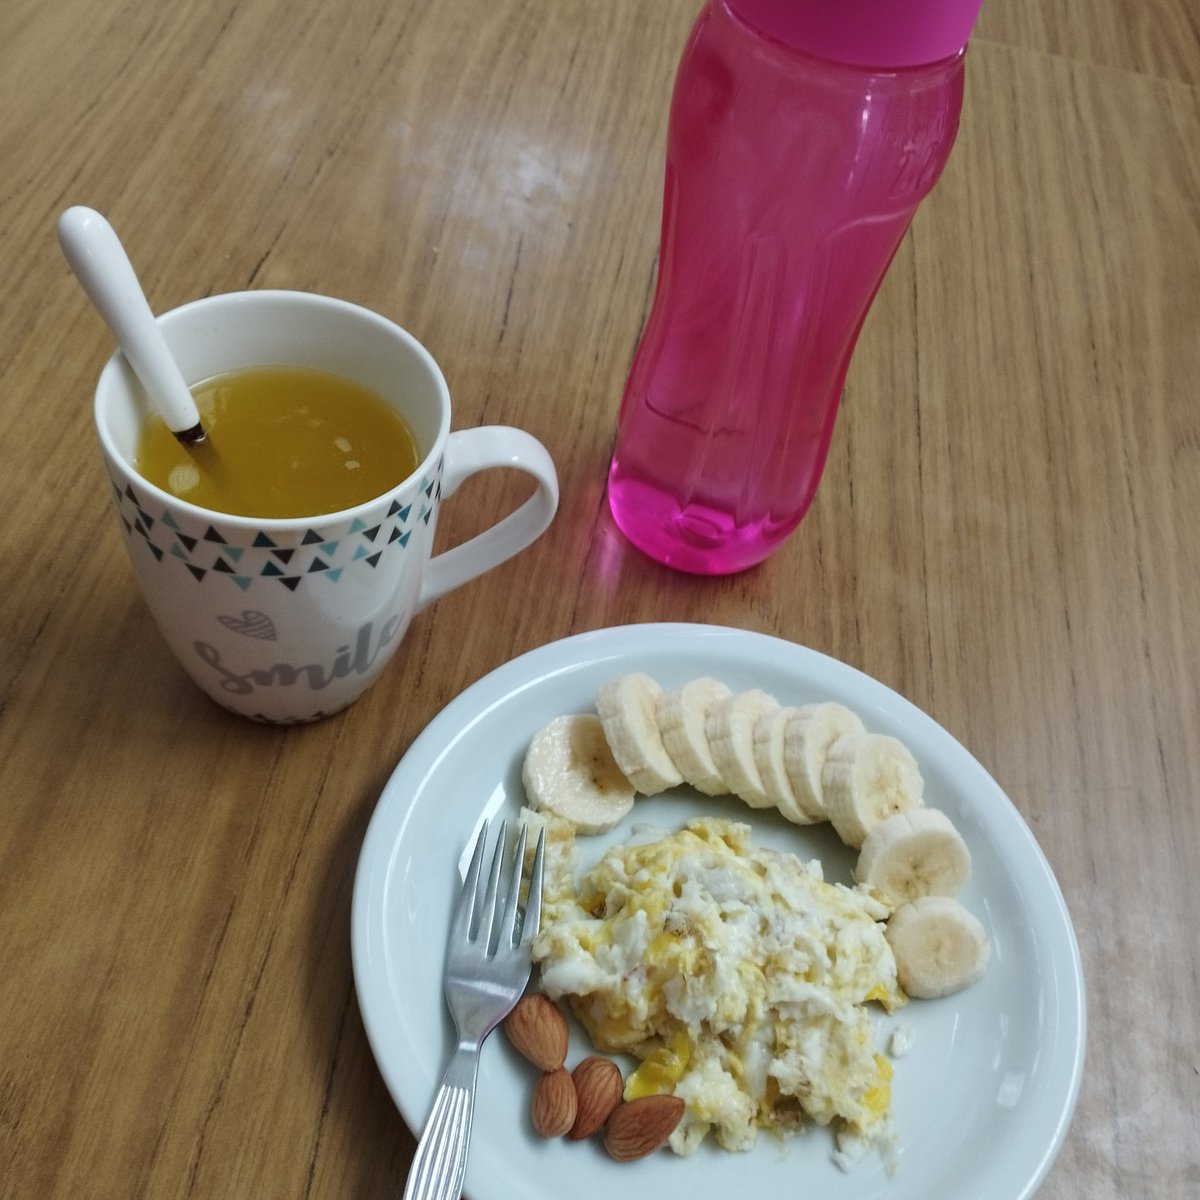 Hace mucho que no subo fotos de mis comidas asique hoy lo voy a hacer.
Desayuno: 186 kcals #edtw #deficitcalorico #gorda